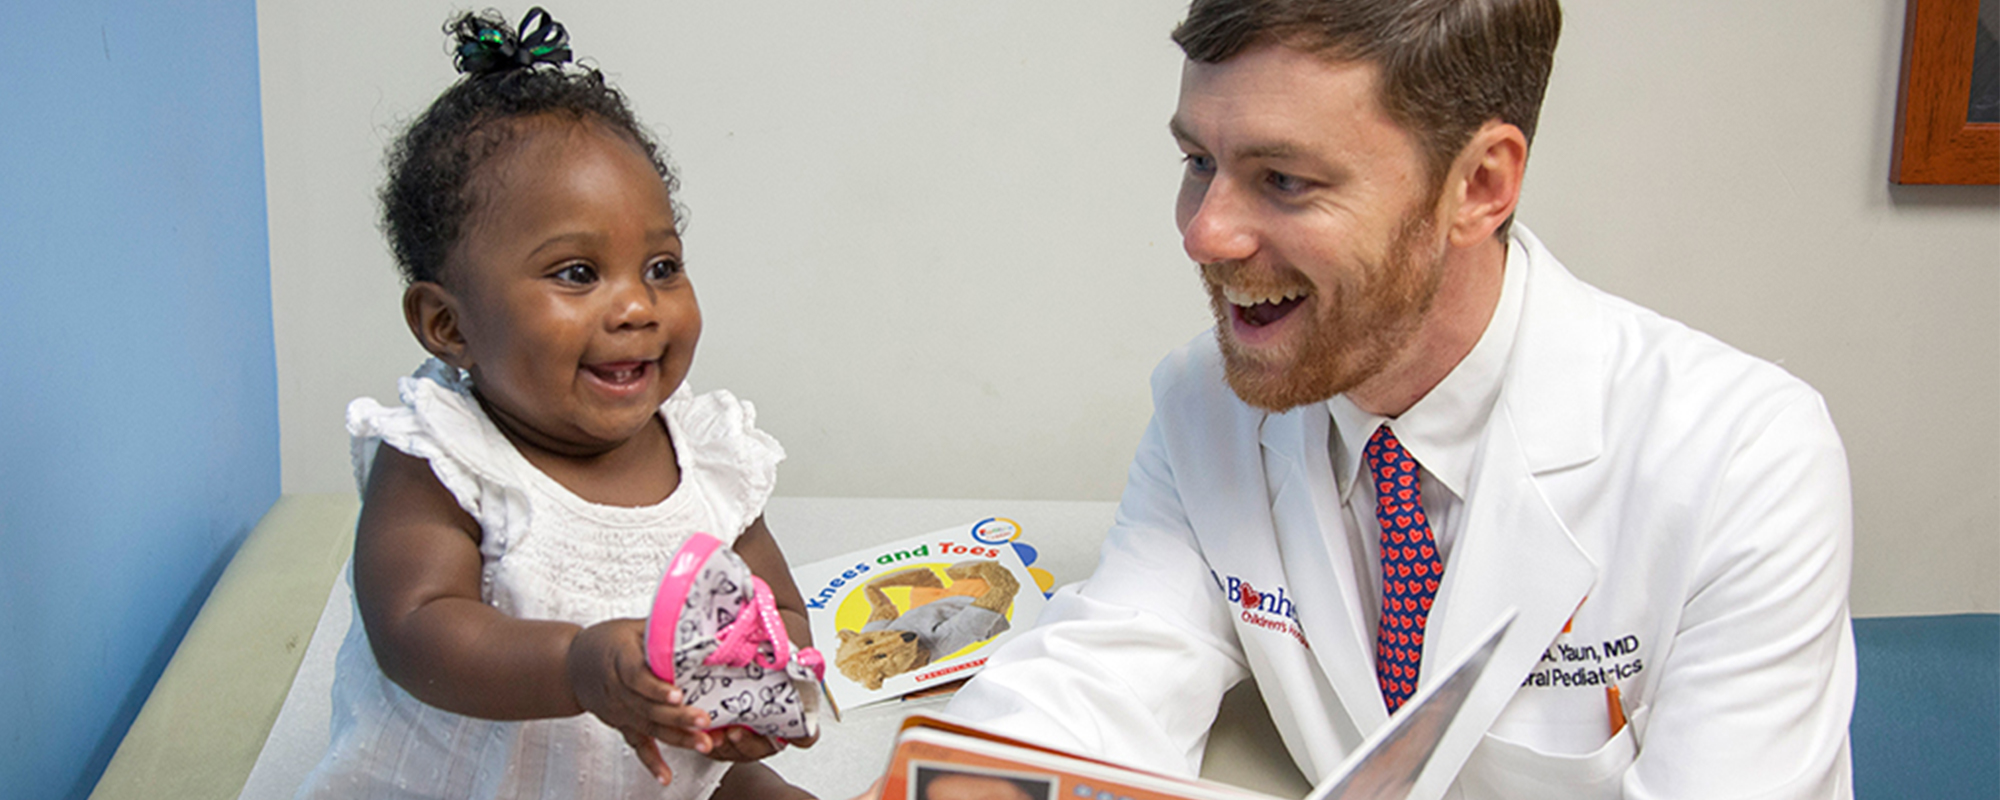 Dr. Jason Yaun meets with a patient, Dakota, at Le Bonheur Children's Hospital in Memphis.